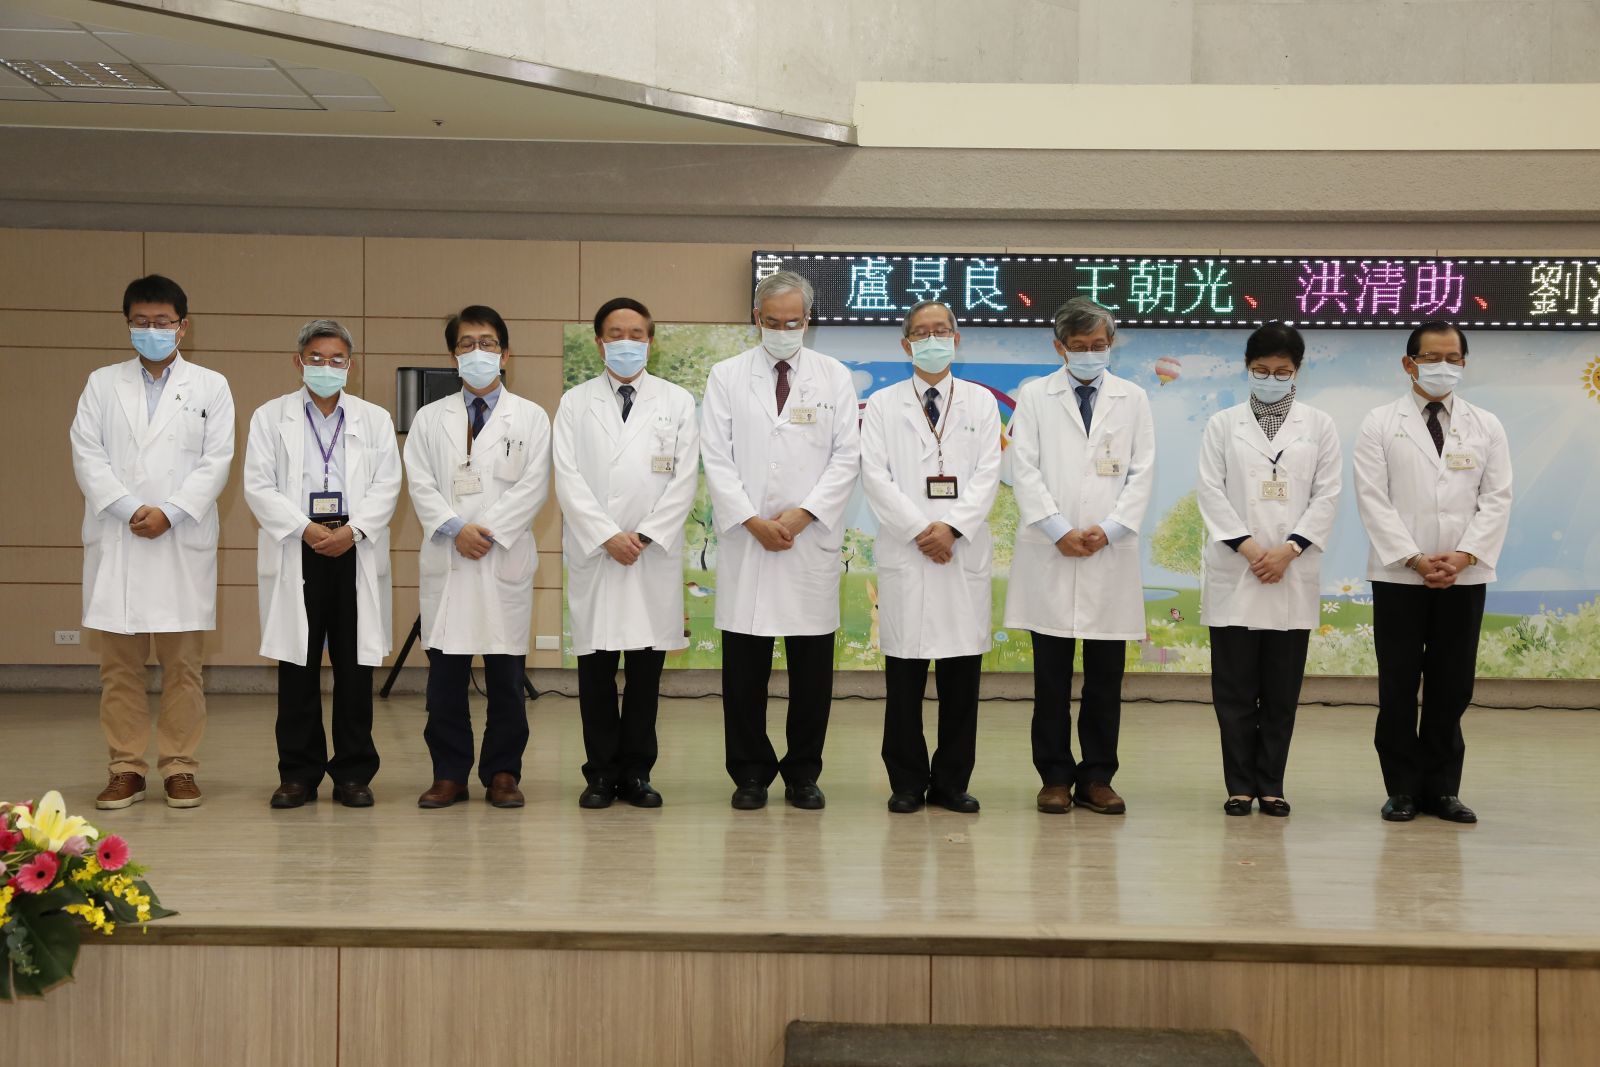 李發耀代理院長及移植外科劉君恕主任、相關醫護、社工人員一同向器官捐贈者的大愛表示感謝與追思。